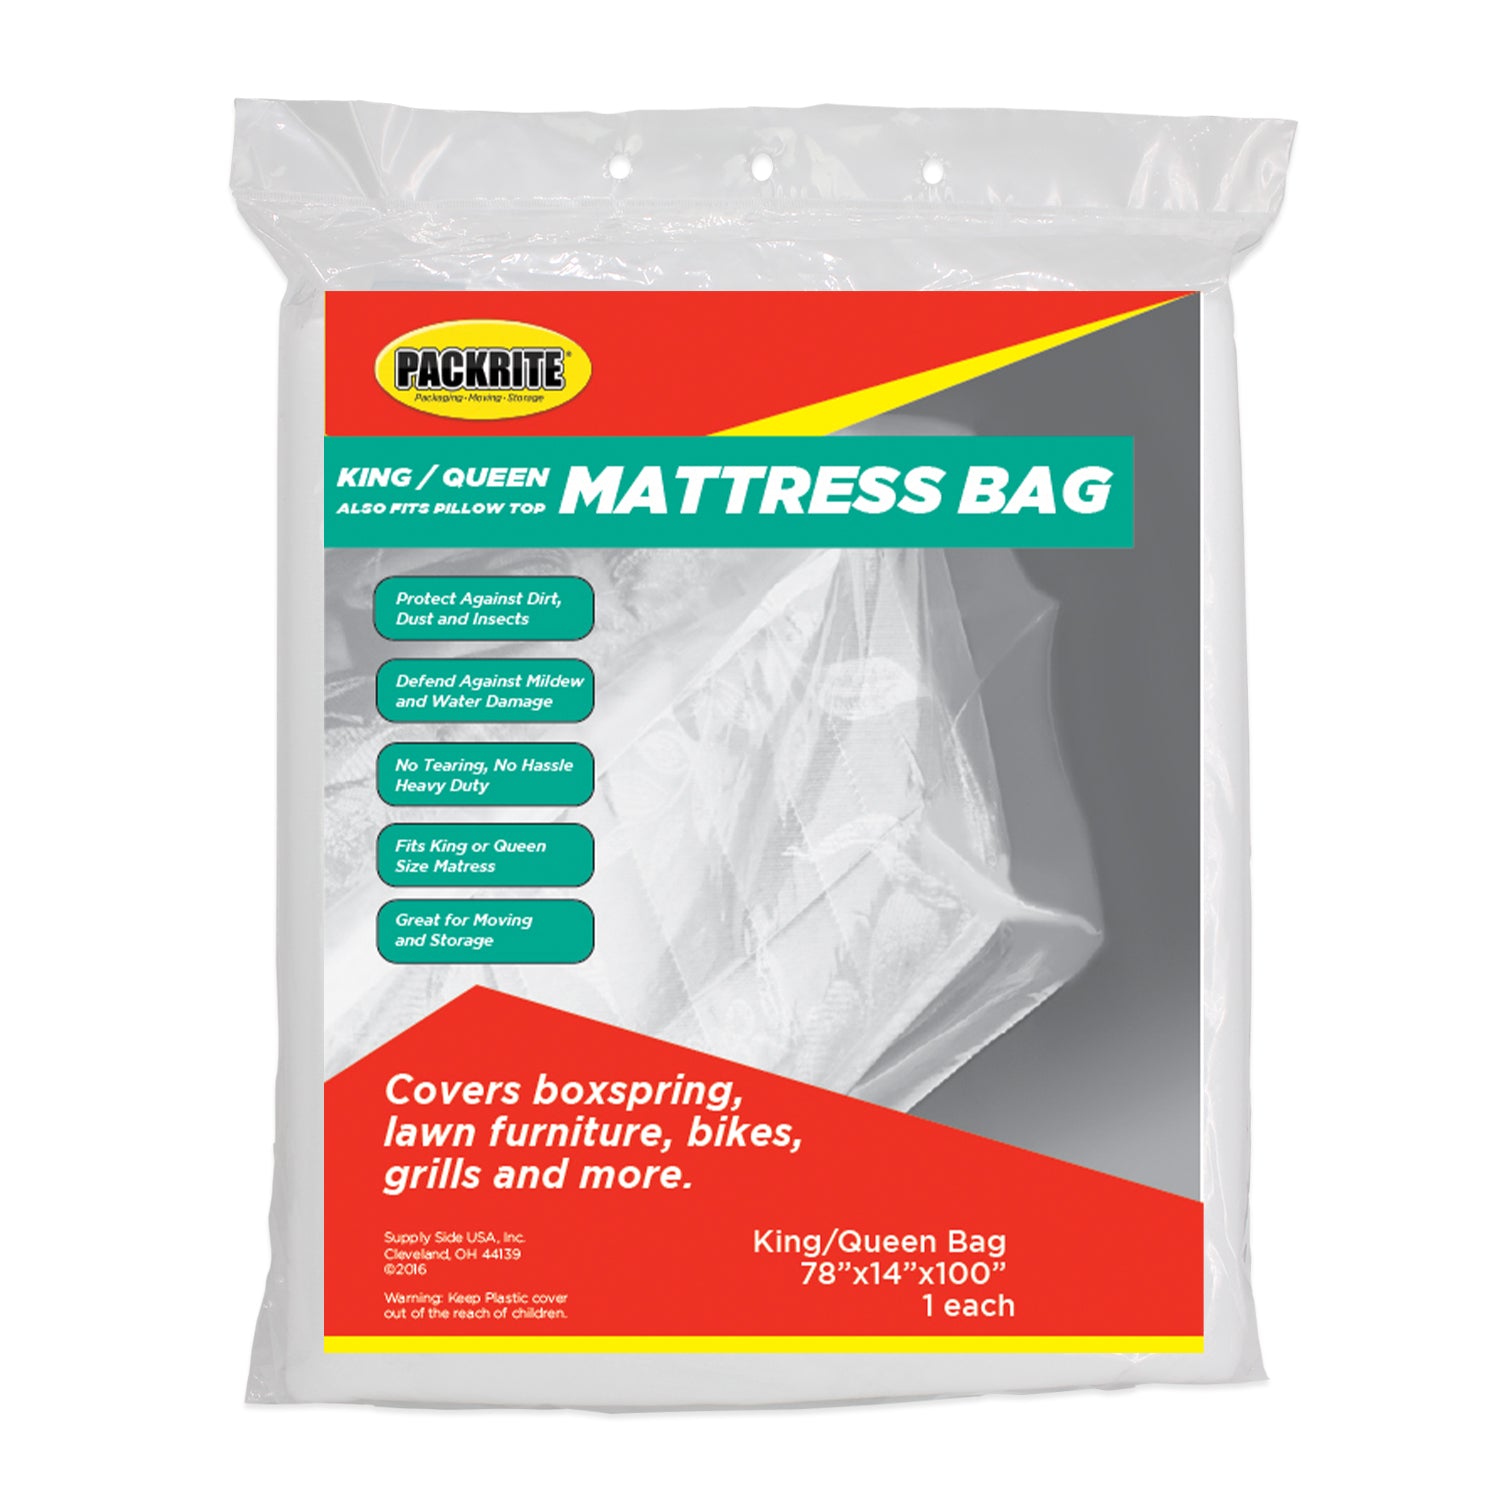 King/Queen Mattress Bag